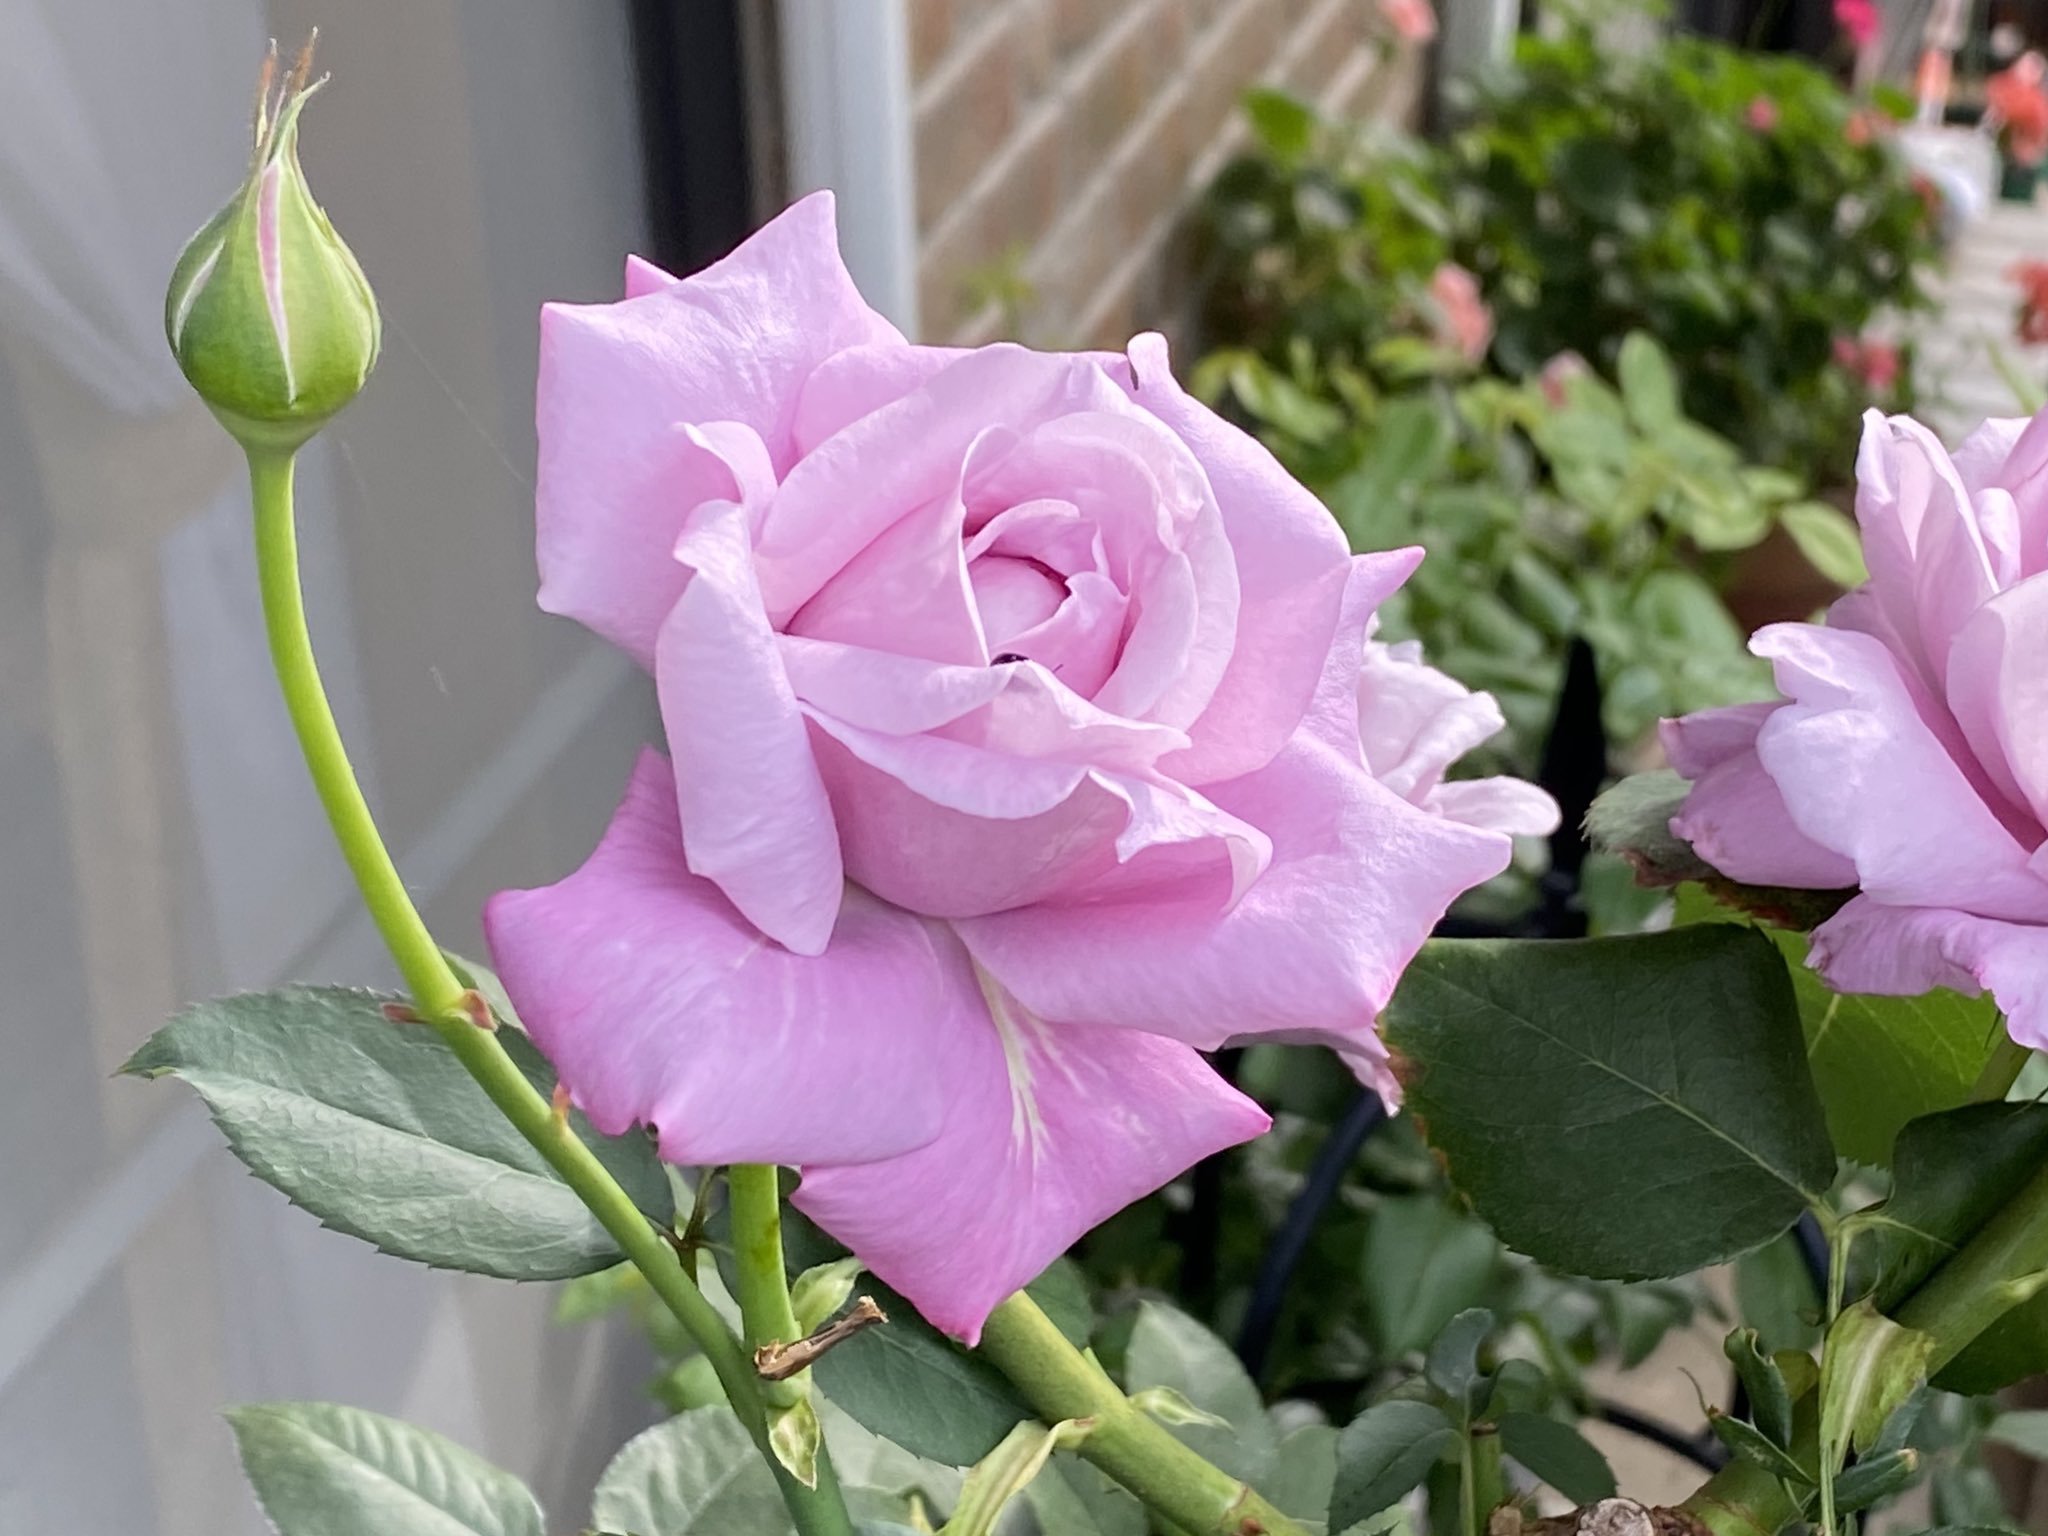 岡部晴彦 バラ日記 Roses 65日目 シャルルドゴール イングリッドバーグマン ロイヤルサンセット ピエールドロンサール Roses Rosestagram Rose T Co Qyeqmw8wtk Twitter